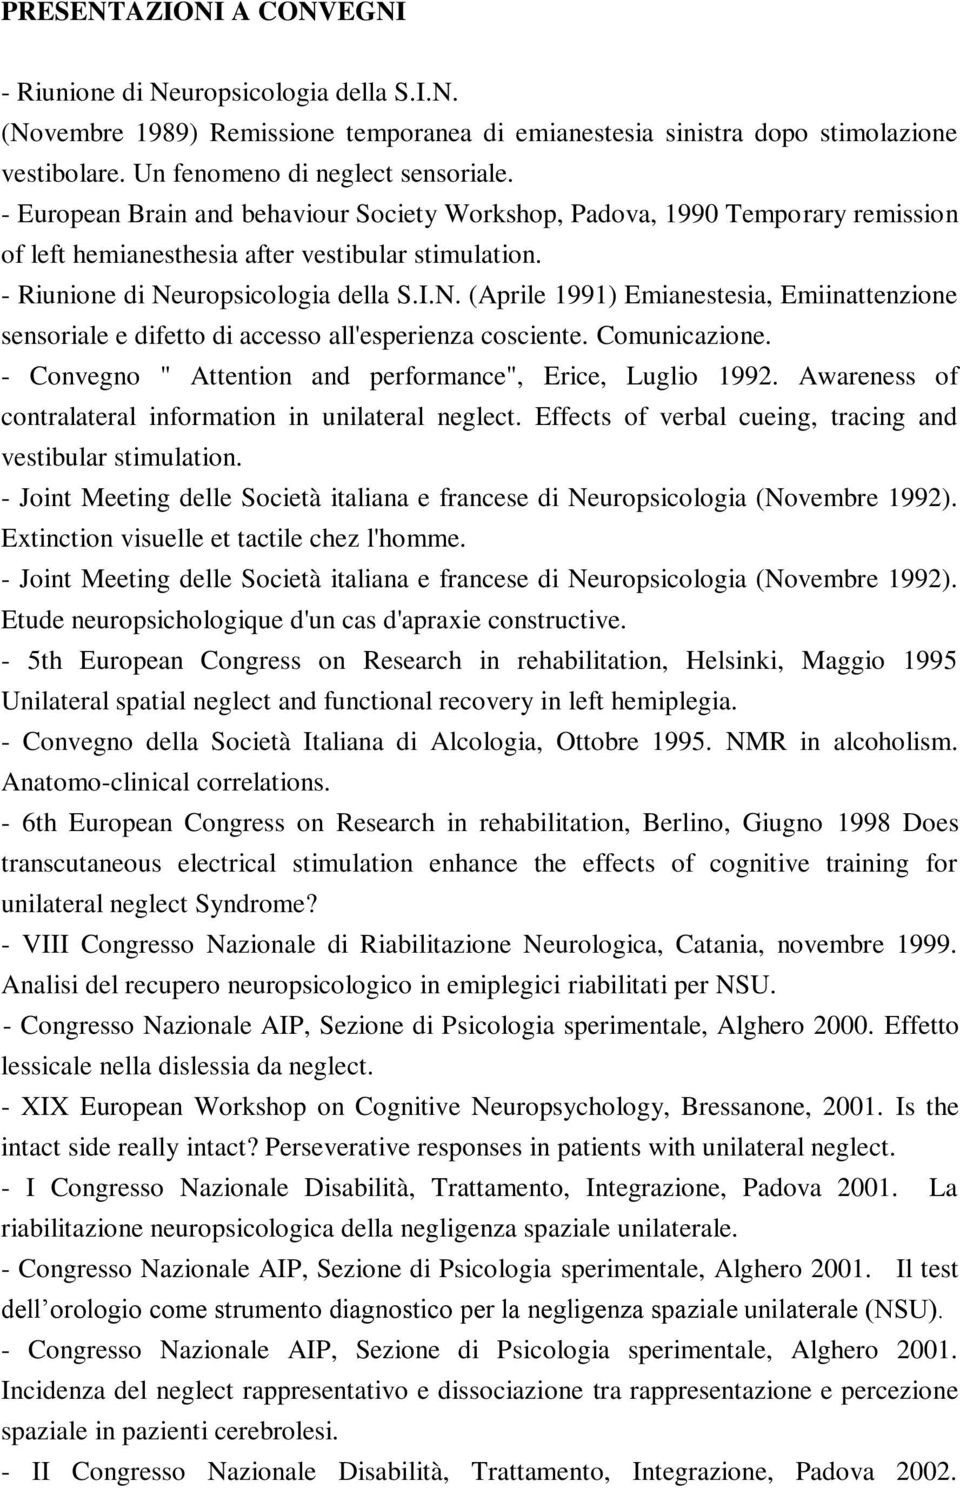 uropsicologia della S.I.N. (Aprile 1991) Emianestesia, Emiinattenzione sensoriale e difetto di accesso all'esperienza cosciente. Comunicazione.